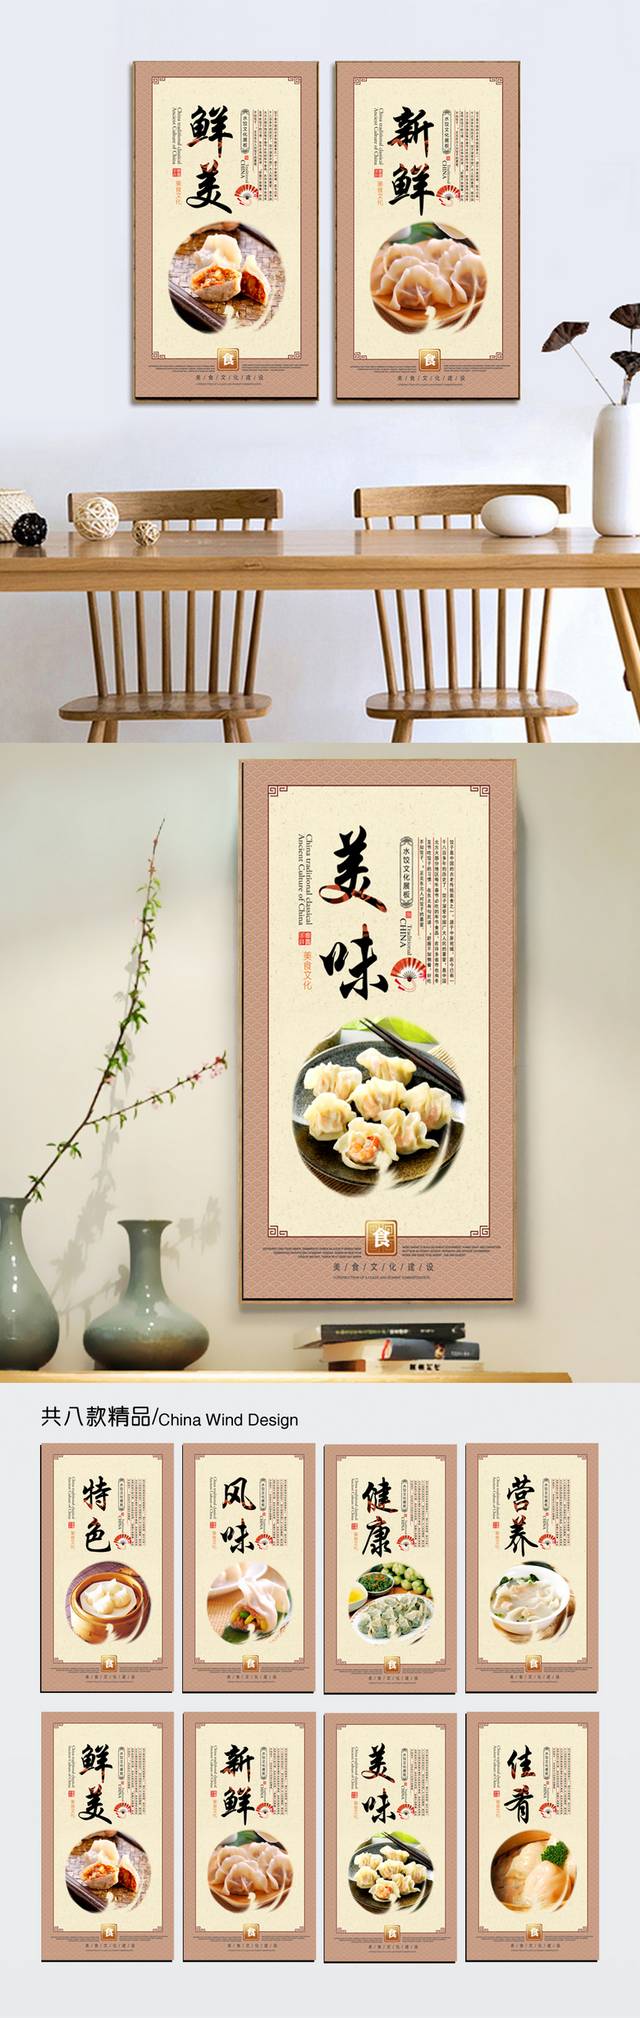 饺子店文化宣传展板